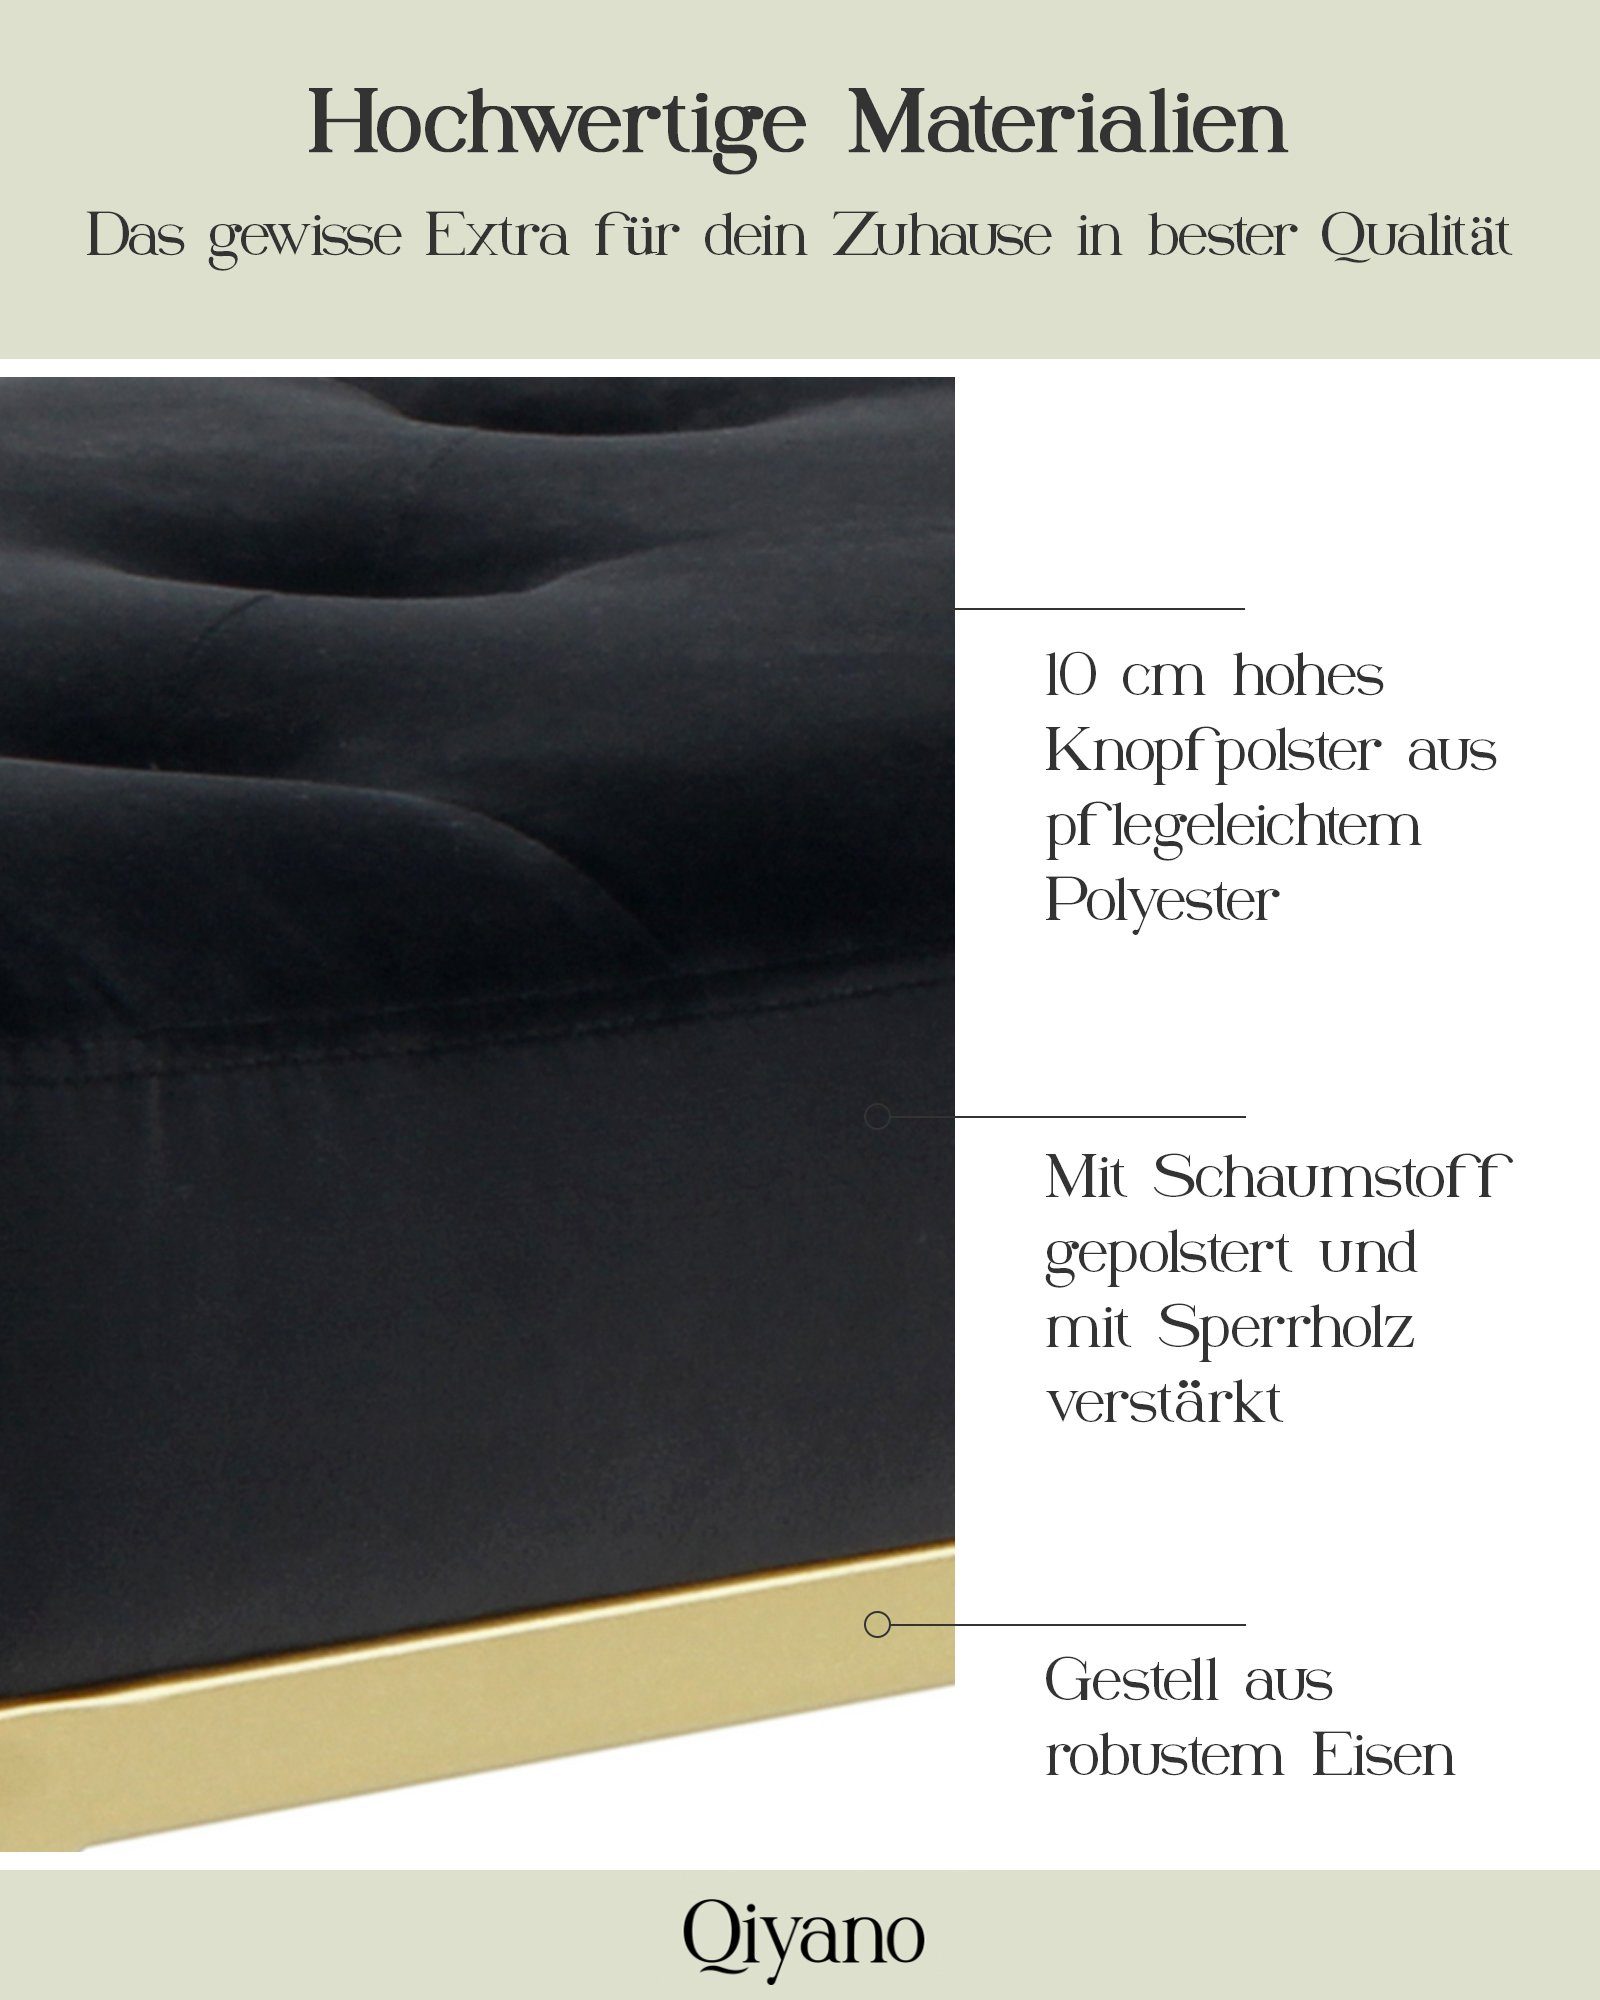 Barock-Stil Gesteppte Schwarz mit Sitz- goldenen Metallfüßen Qiyano Samt Sitzbank Polsterbank